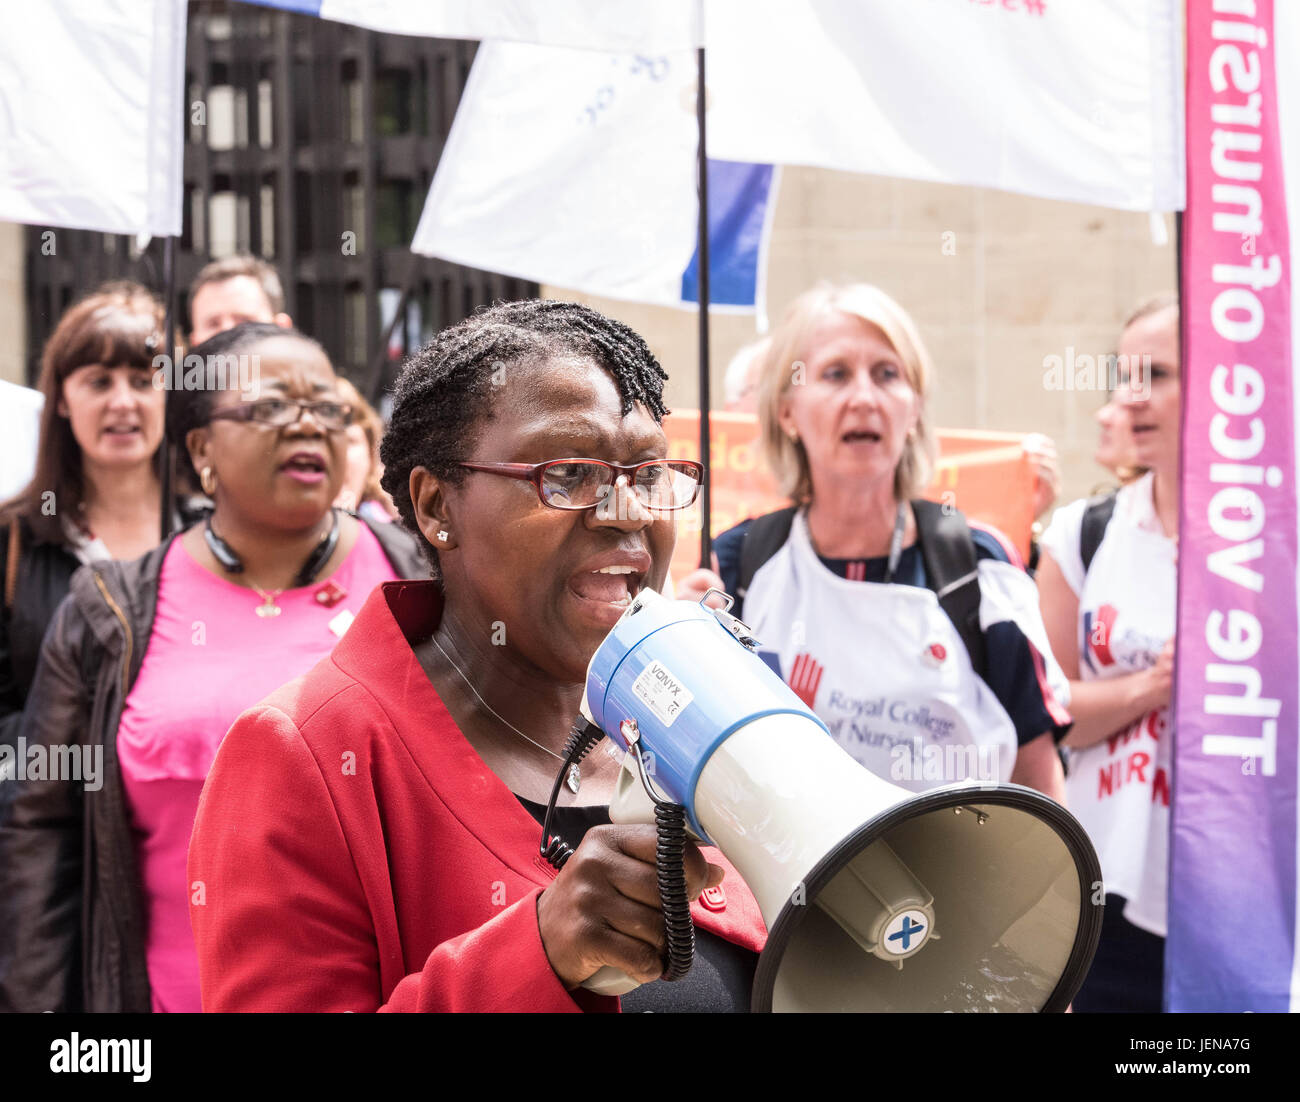 Londra il 27 giugno 2017, il Royal College of Nursing deputati al di fuori del Reparto di Salute, Londra, lanciano una campagna contro il 1% paga il cappuccio con una protesta da parte di frontline infermieri Credito: Ian Davidson/Alamy Live News Foto Stock